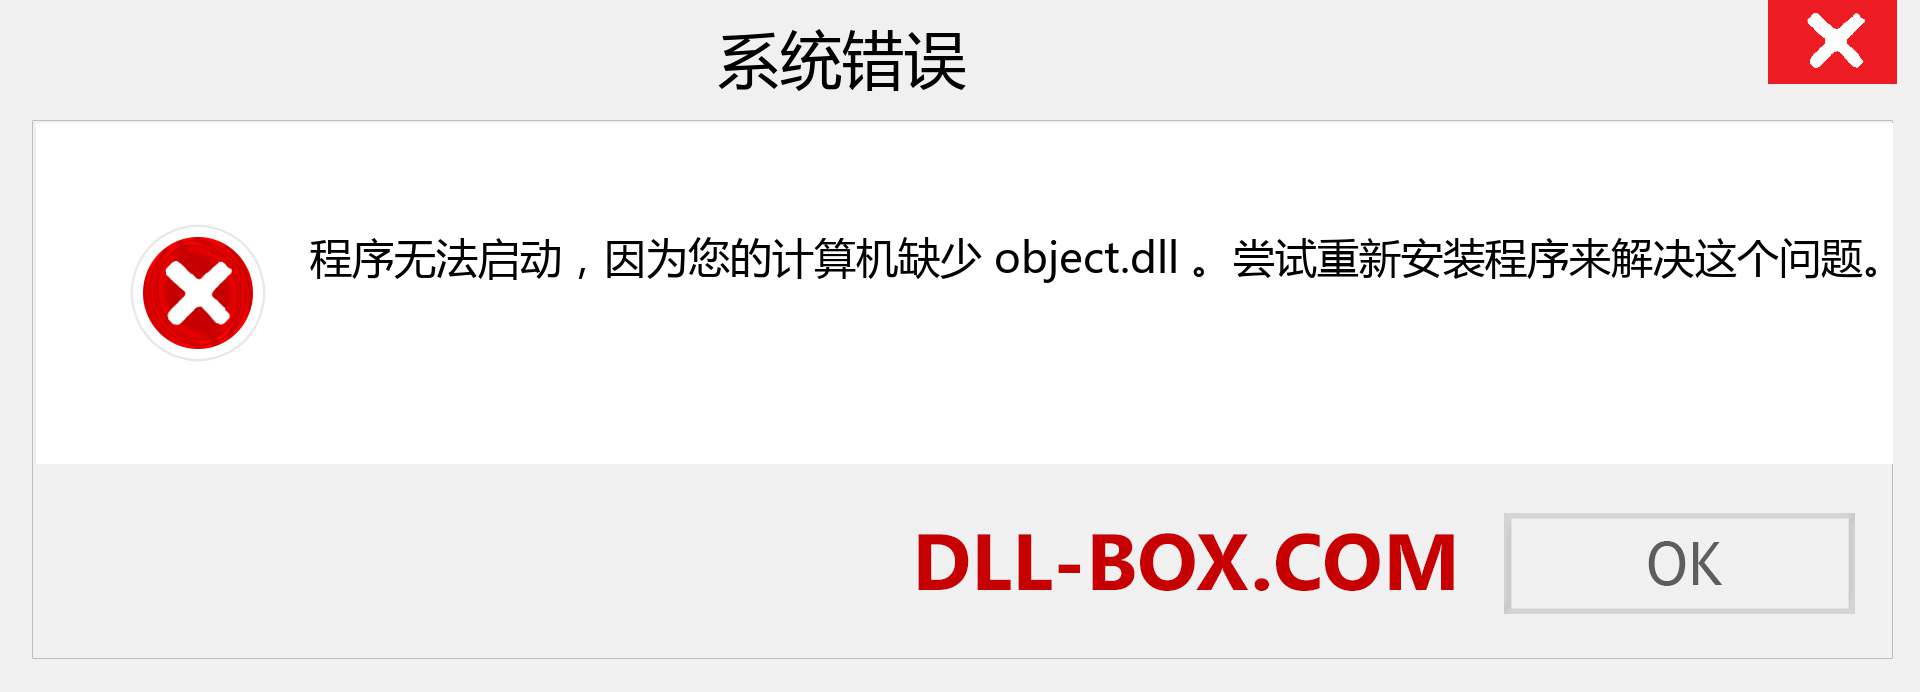 object.dll 文件丢失？。 适用于 Windows 7、8、10 的下载 - 修复 Windows、照片、图像上的 object dll 丢失错误